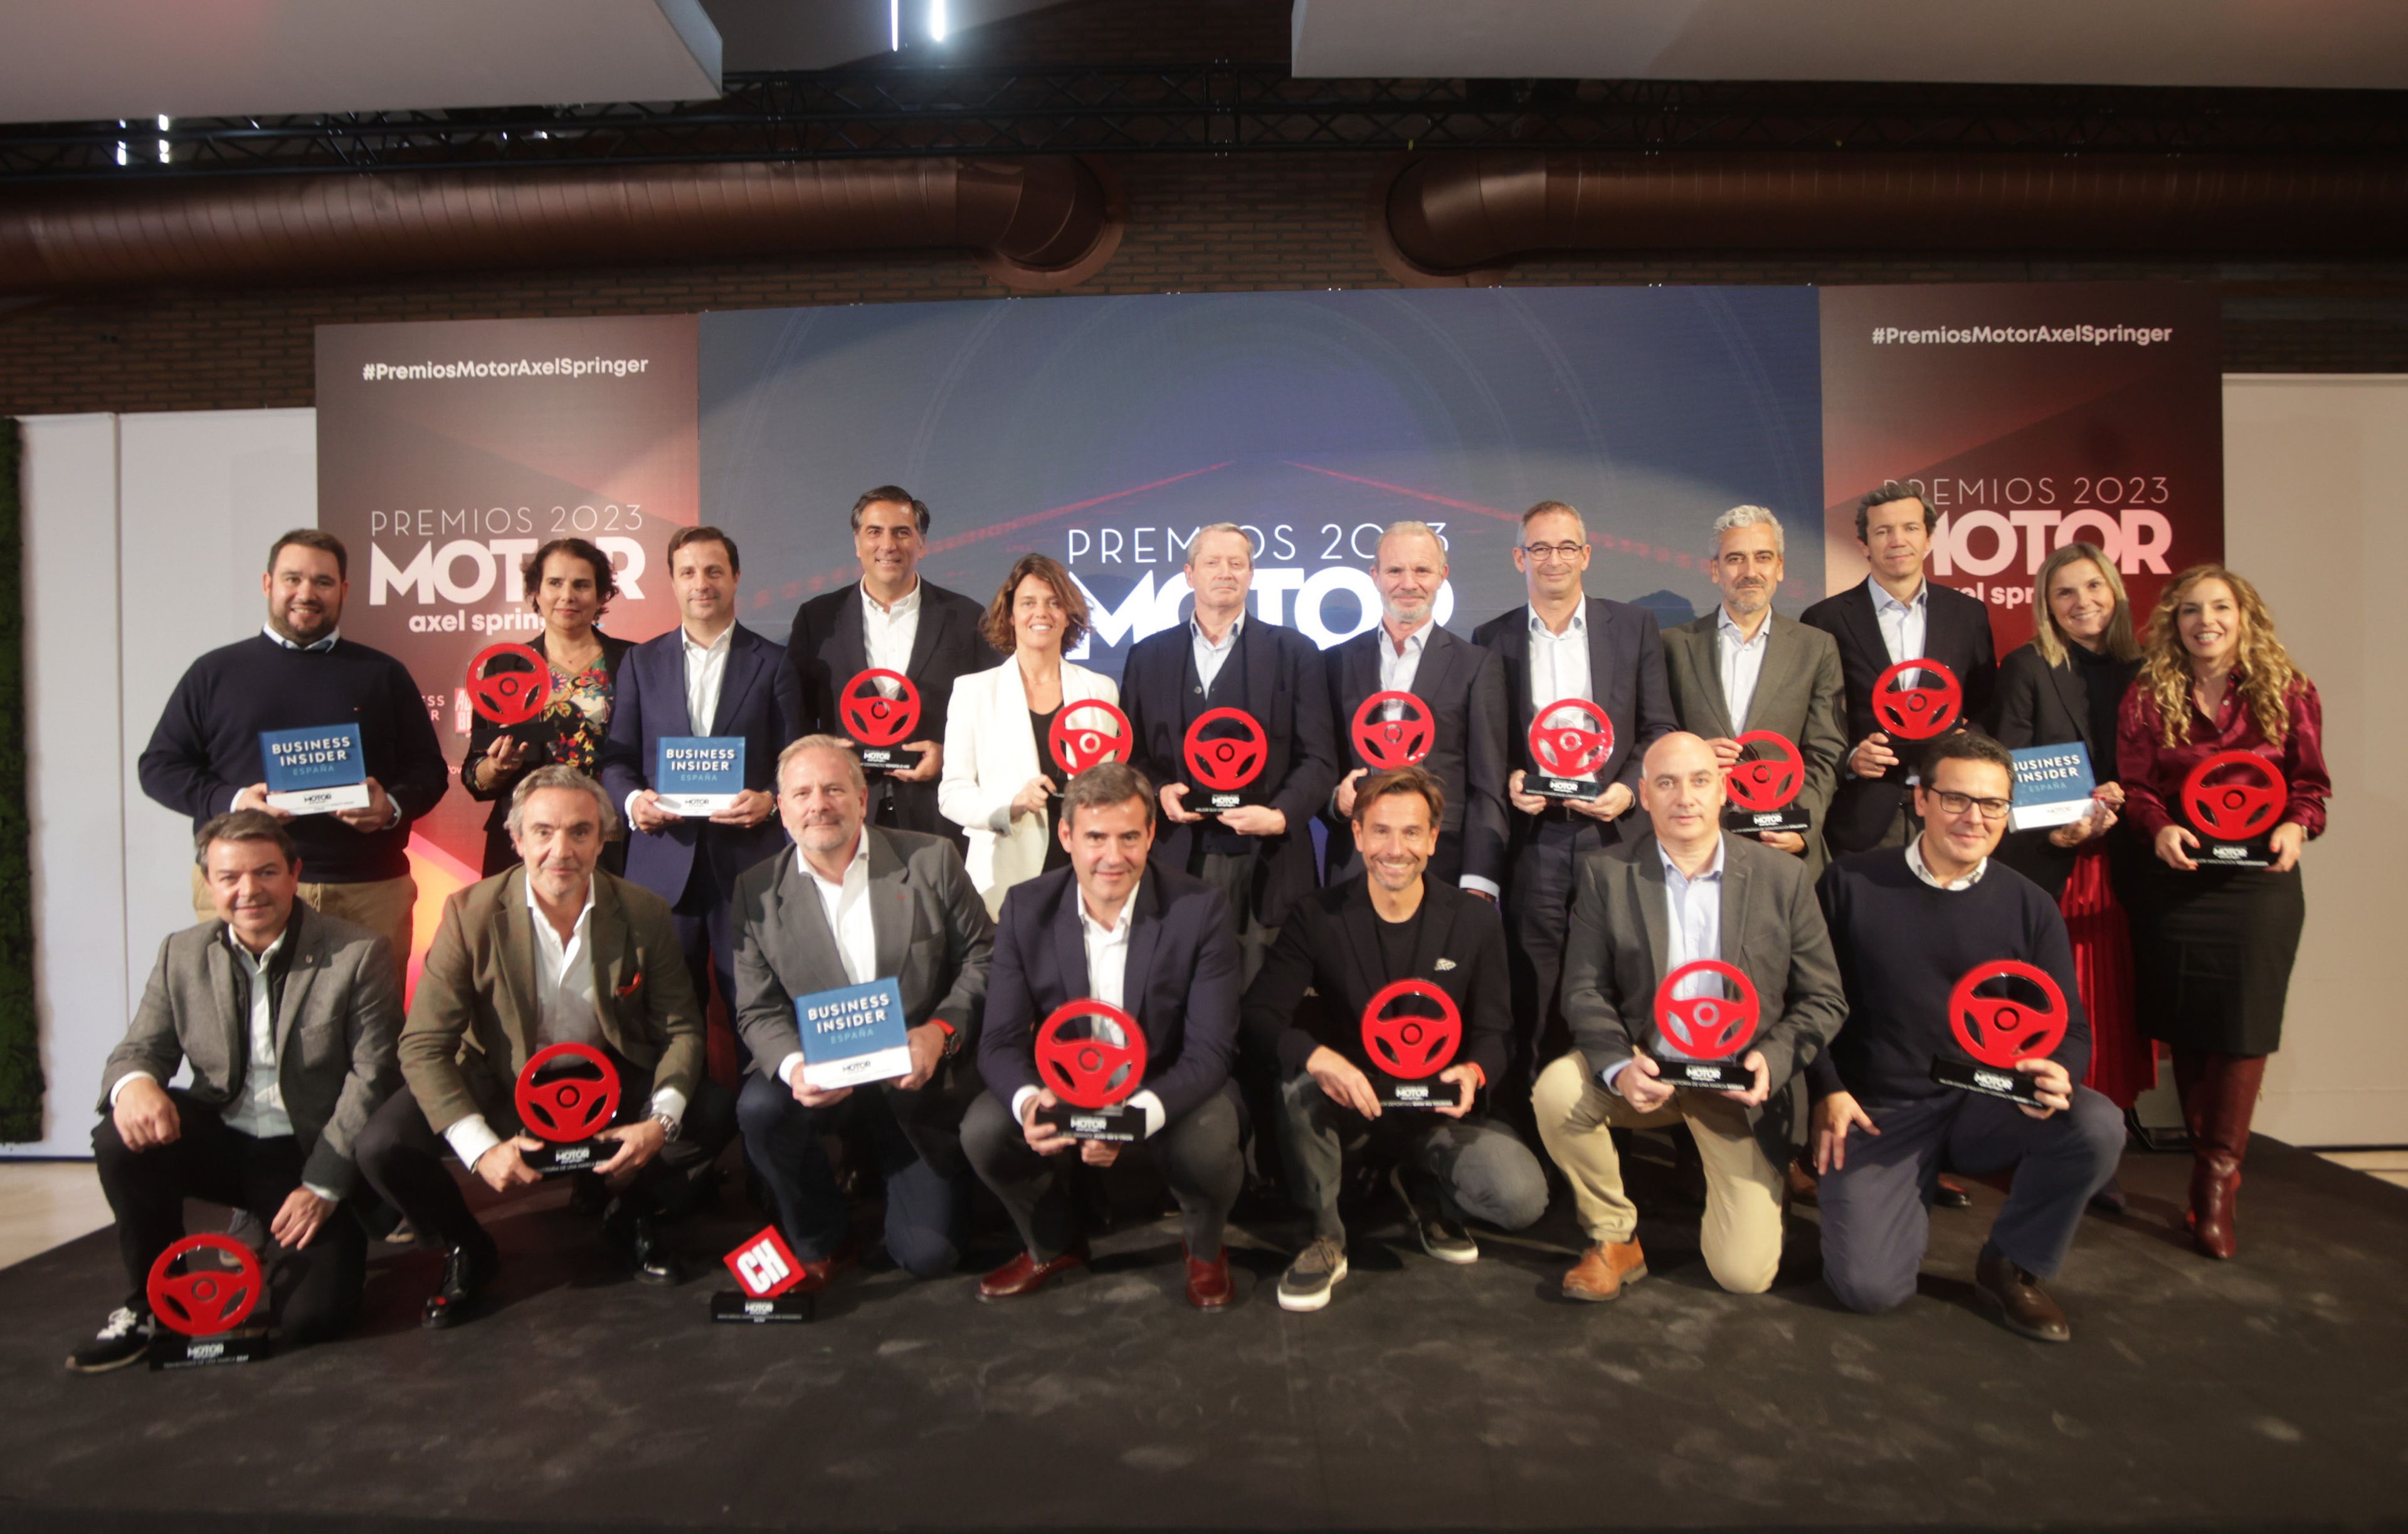 Favoritos de la audiencia y de la redacción en los premios Motor de Axel Springer.